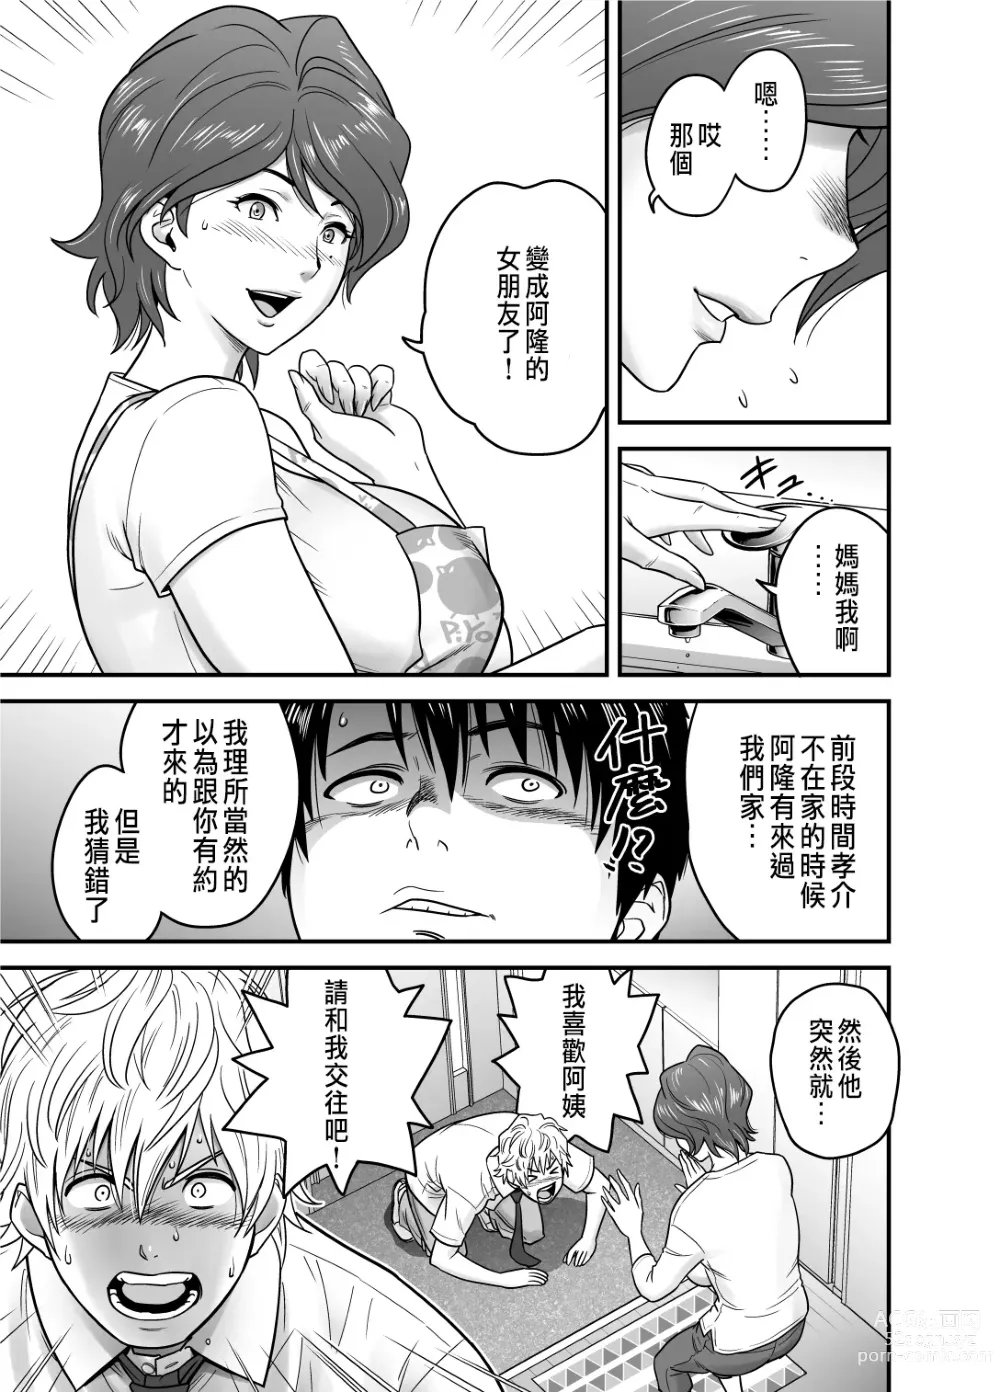 Page 9 of manga 母が友カノになったので1~3